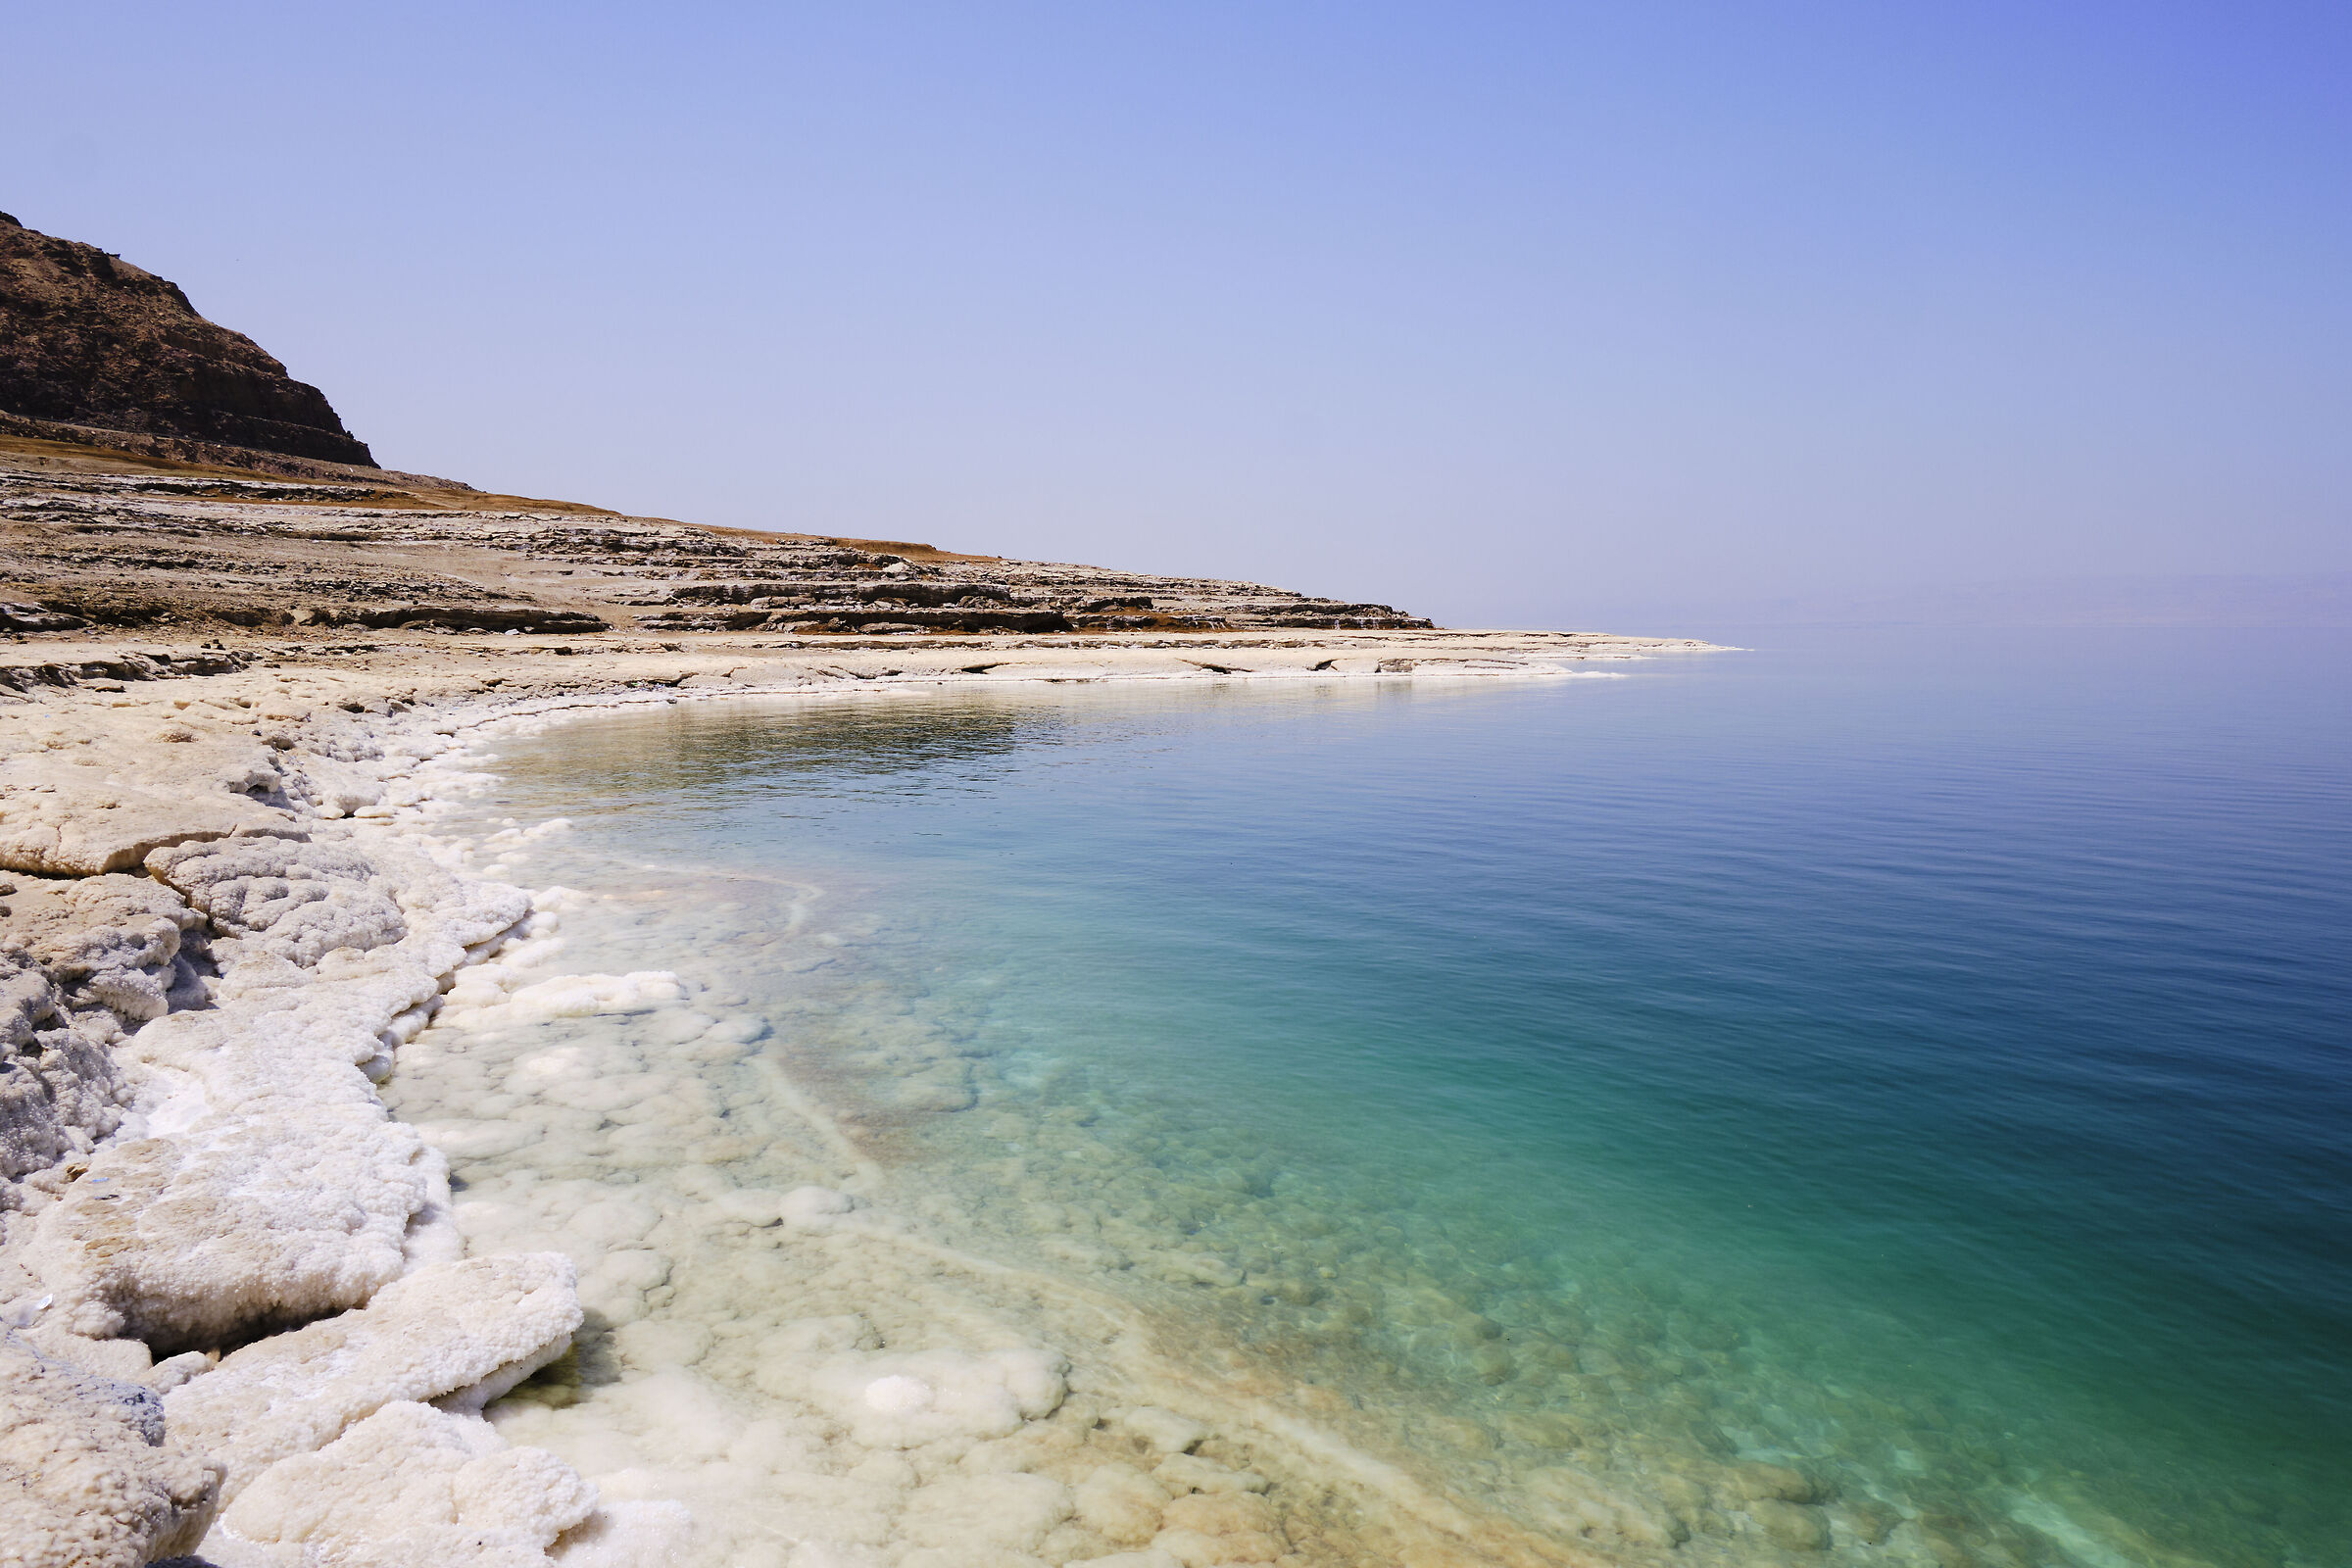 Dead Sea near ma'in...